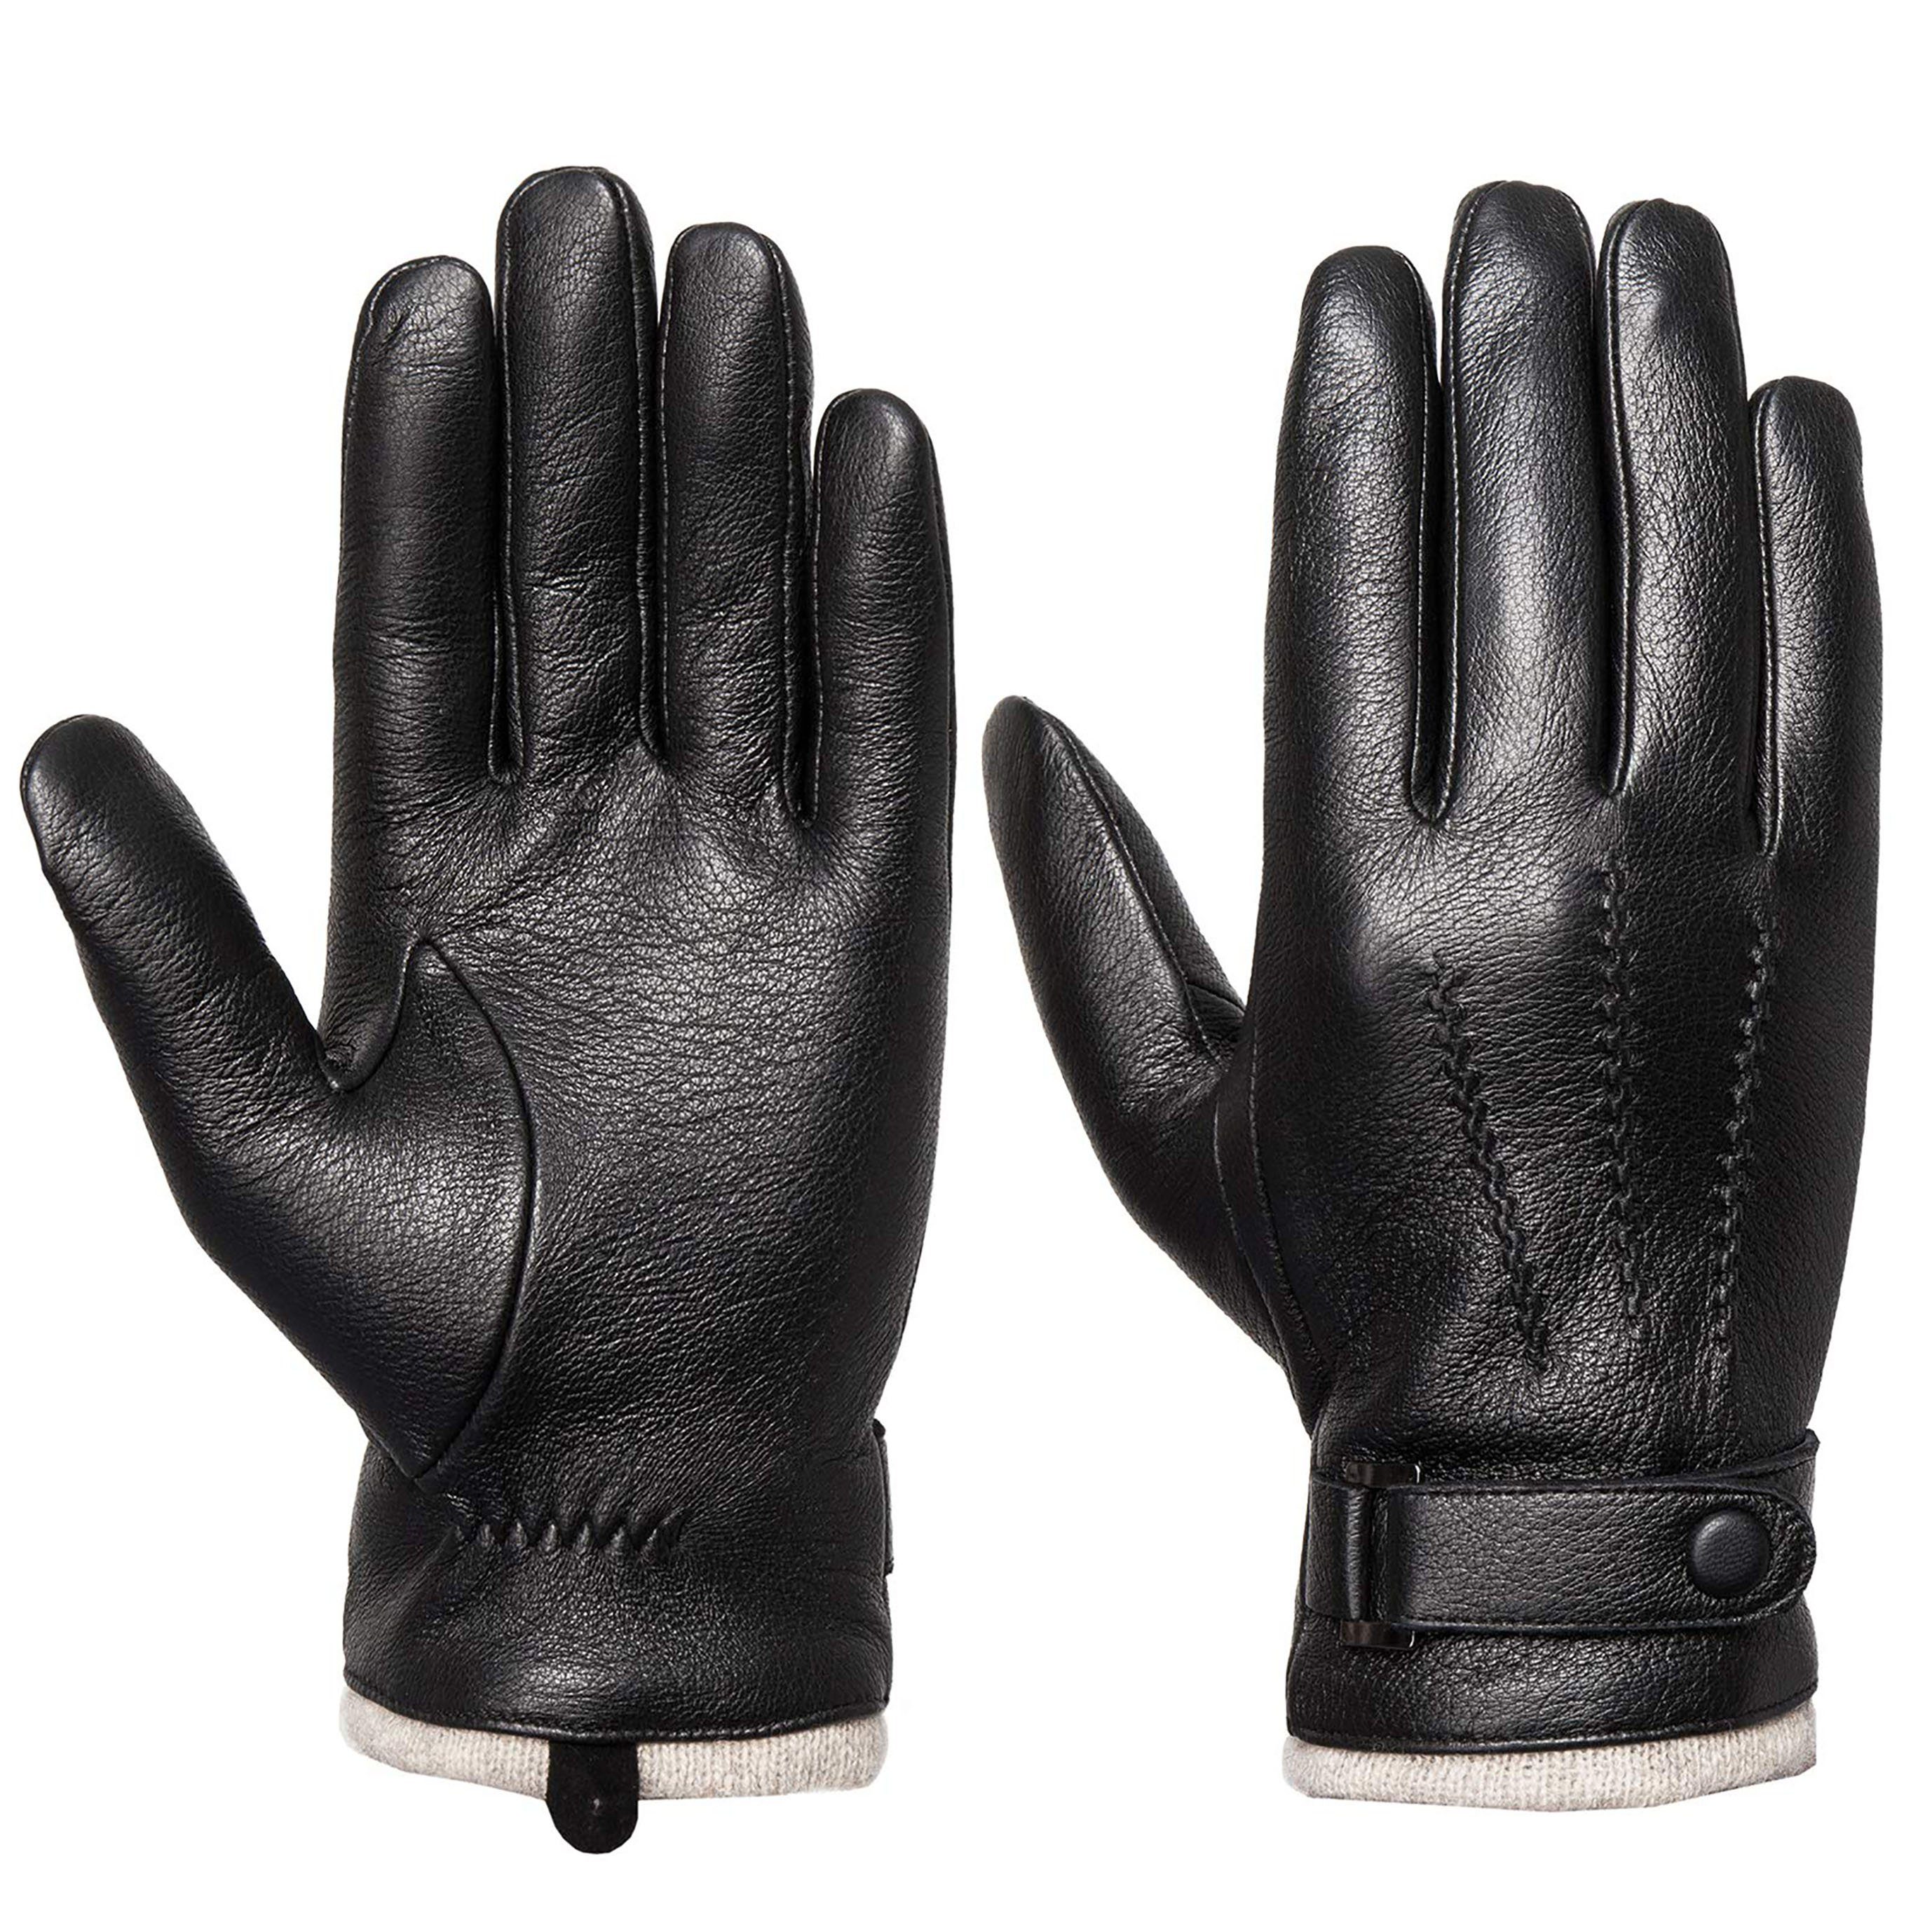 Tapferer Ping Lederhandschuhe Herren Winter Leder Touchscreen Handschuhe